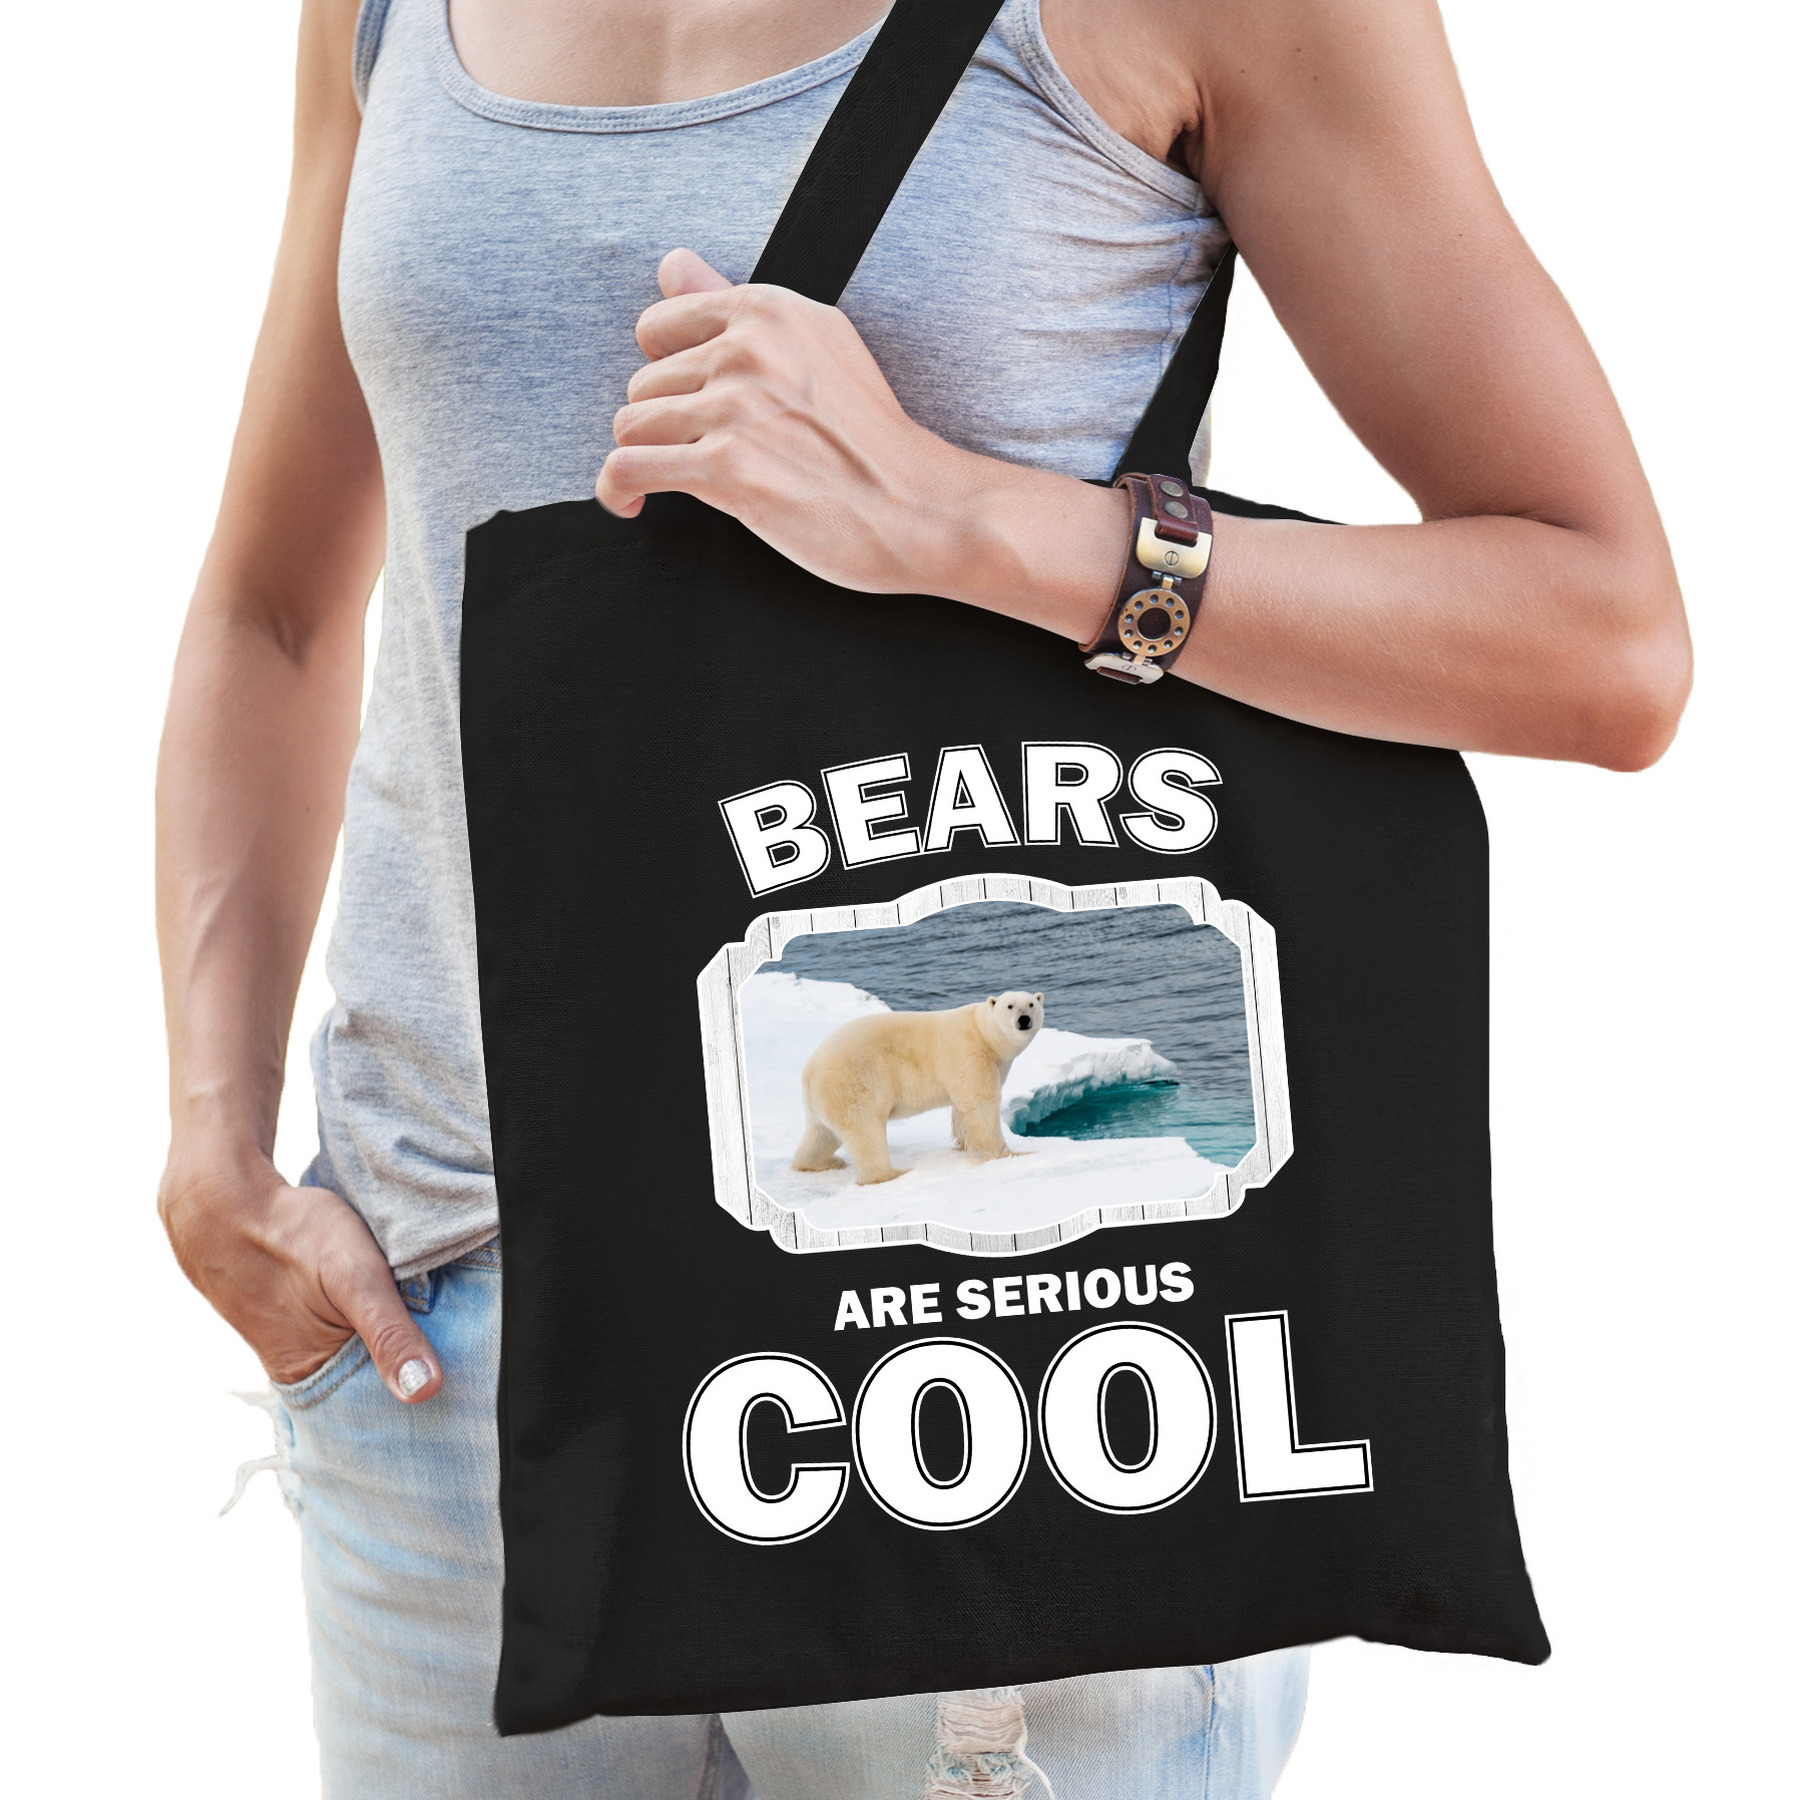 Katoenen tasje bears are serious cool zwart - ijsberen/ ijsbeer cadeau tas